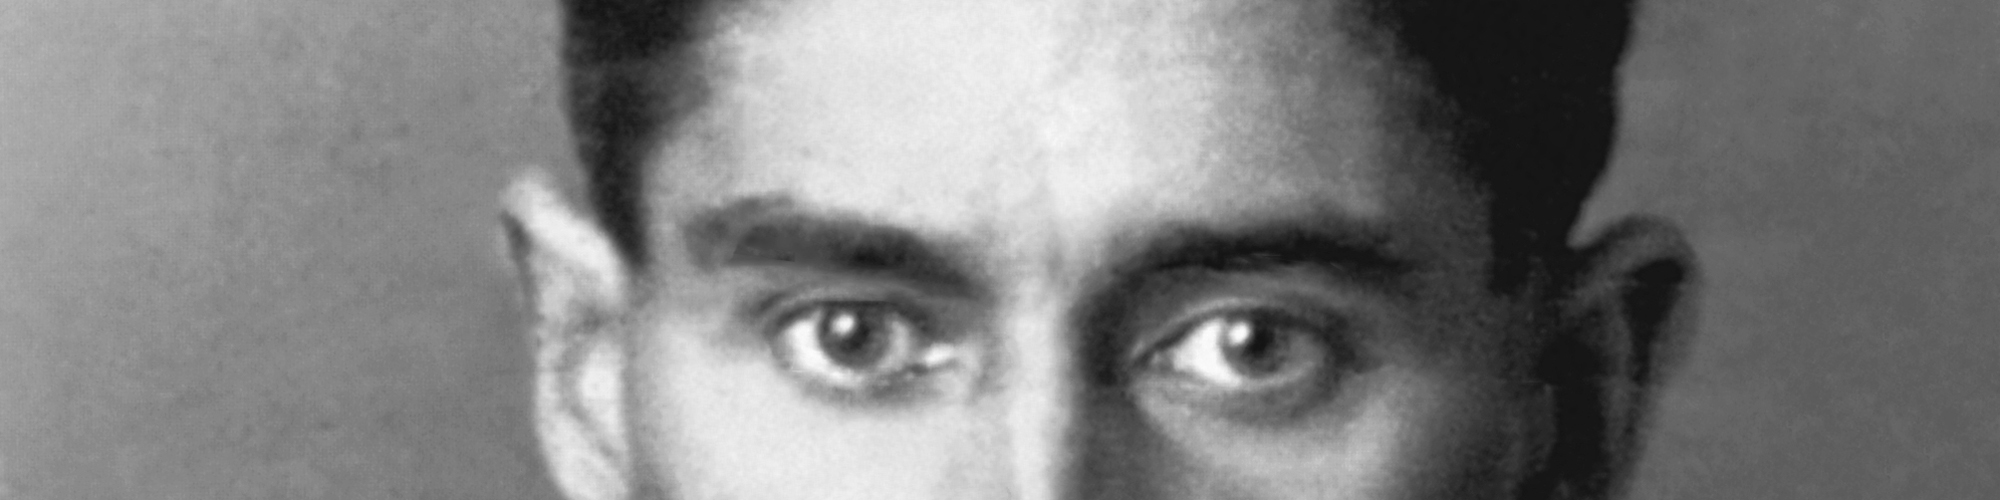 schwarz/weiß-Fotografie Franz Kafka von 1923, Augenpartie